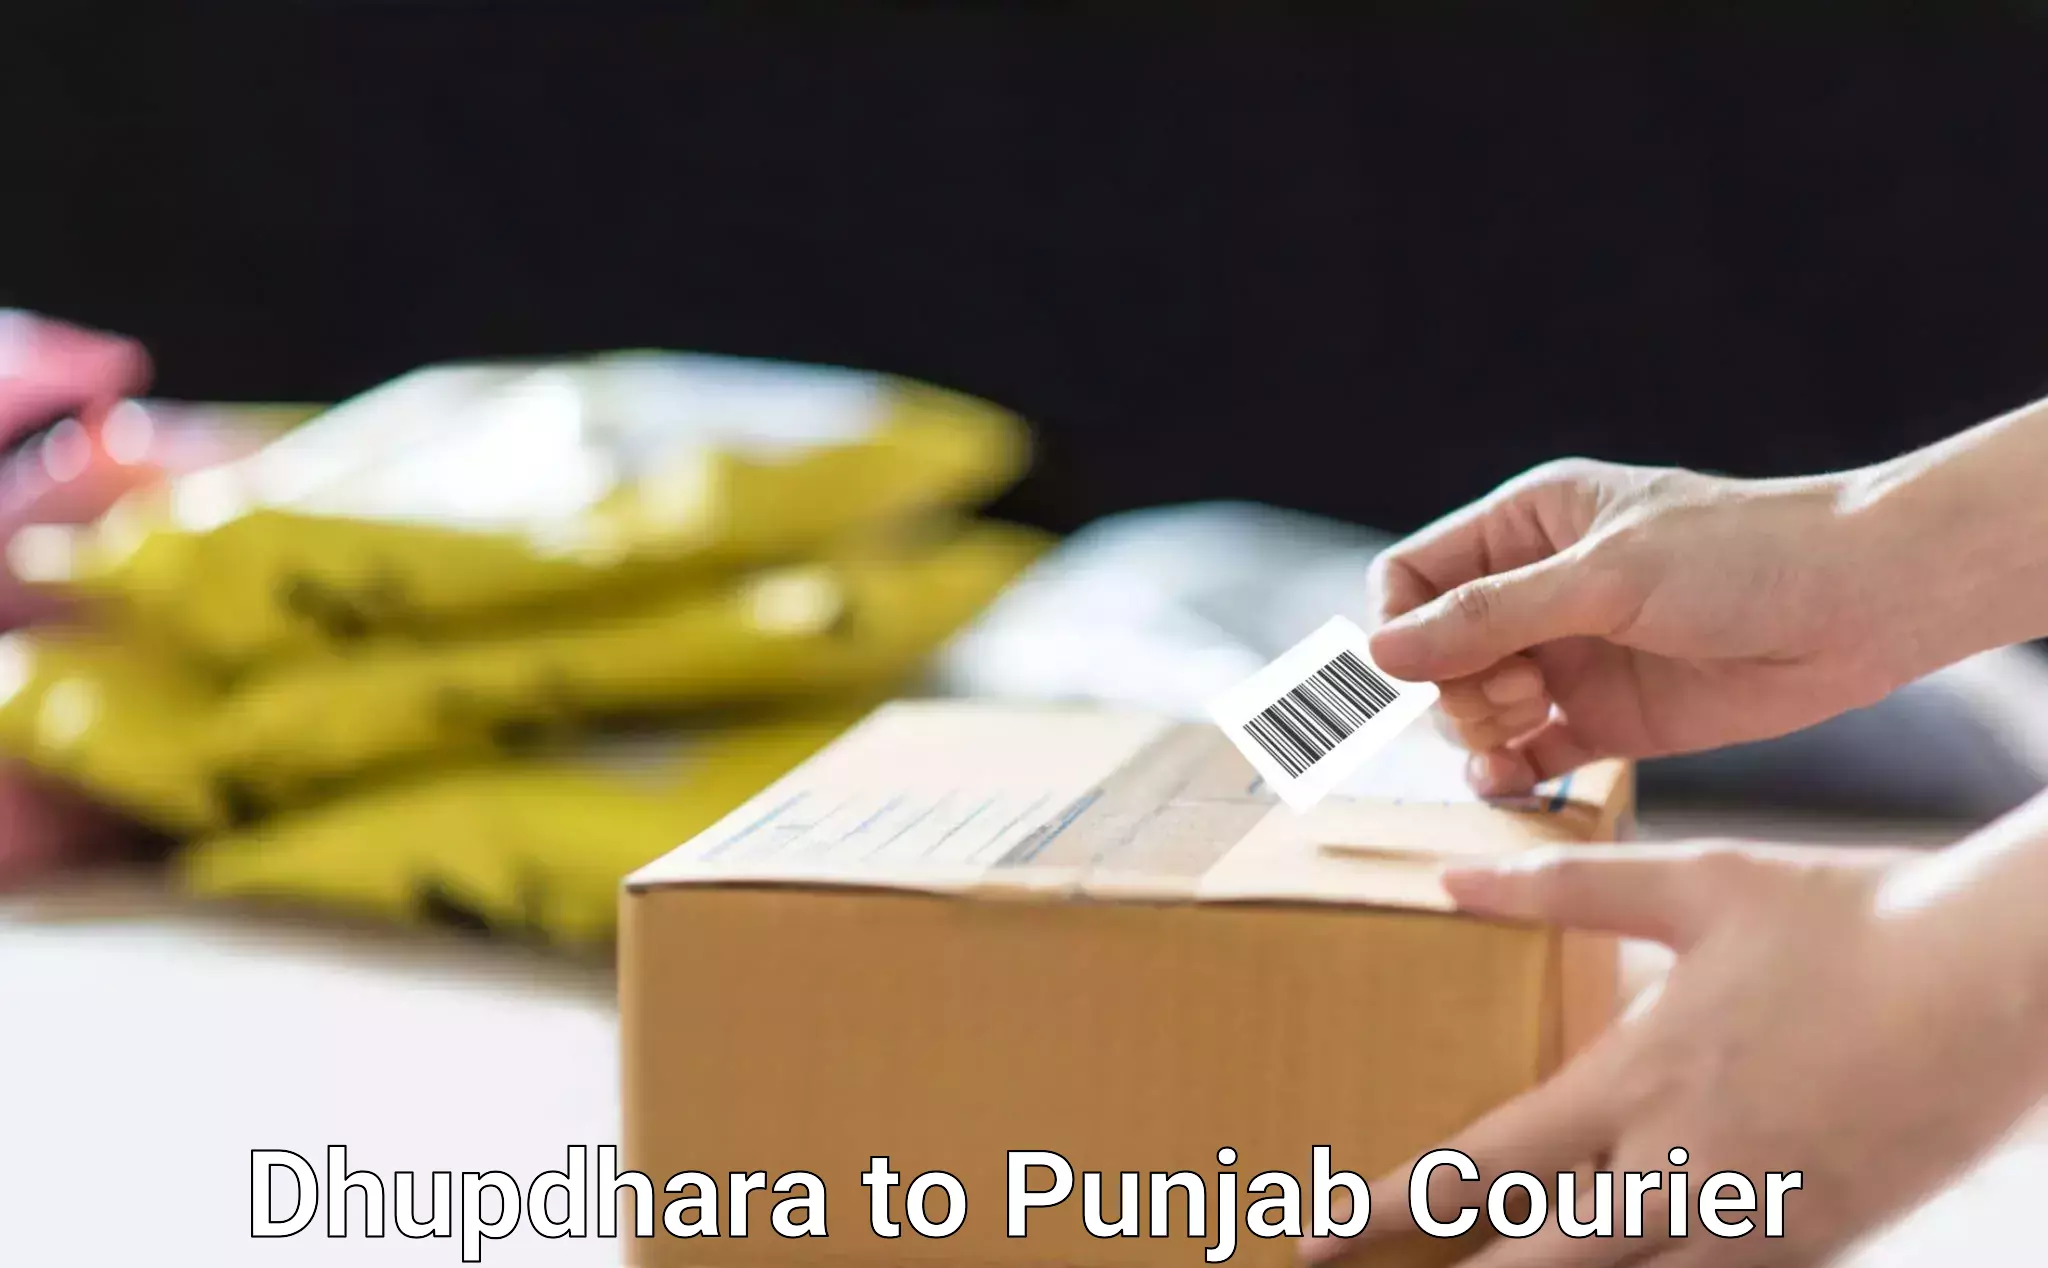 Seamless shipping service Dhupdhara to Punjab